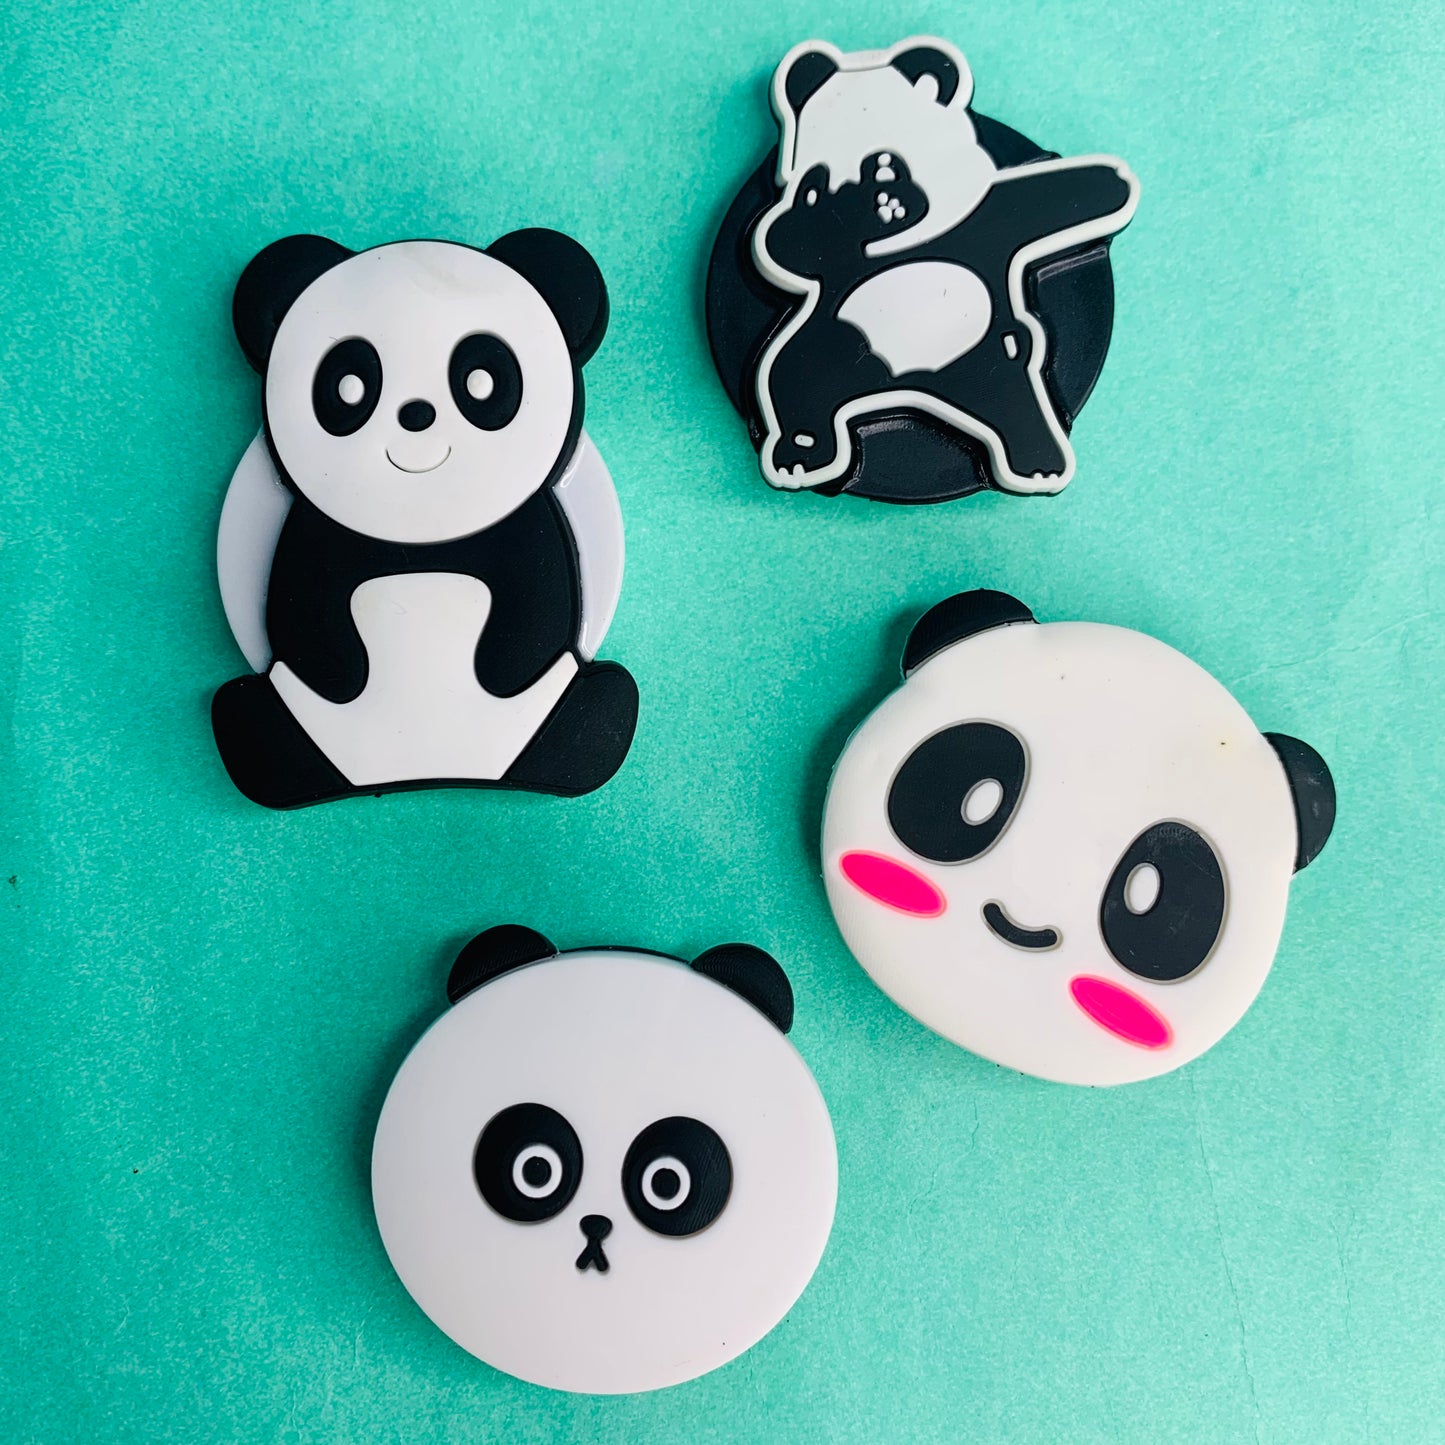 Cute Pandas pop socket